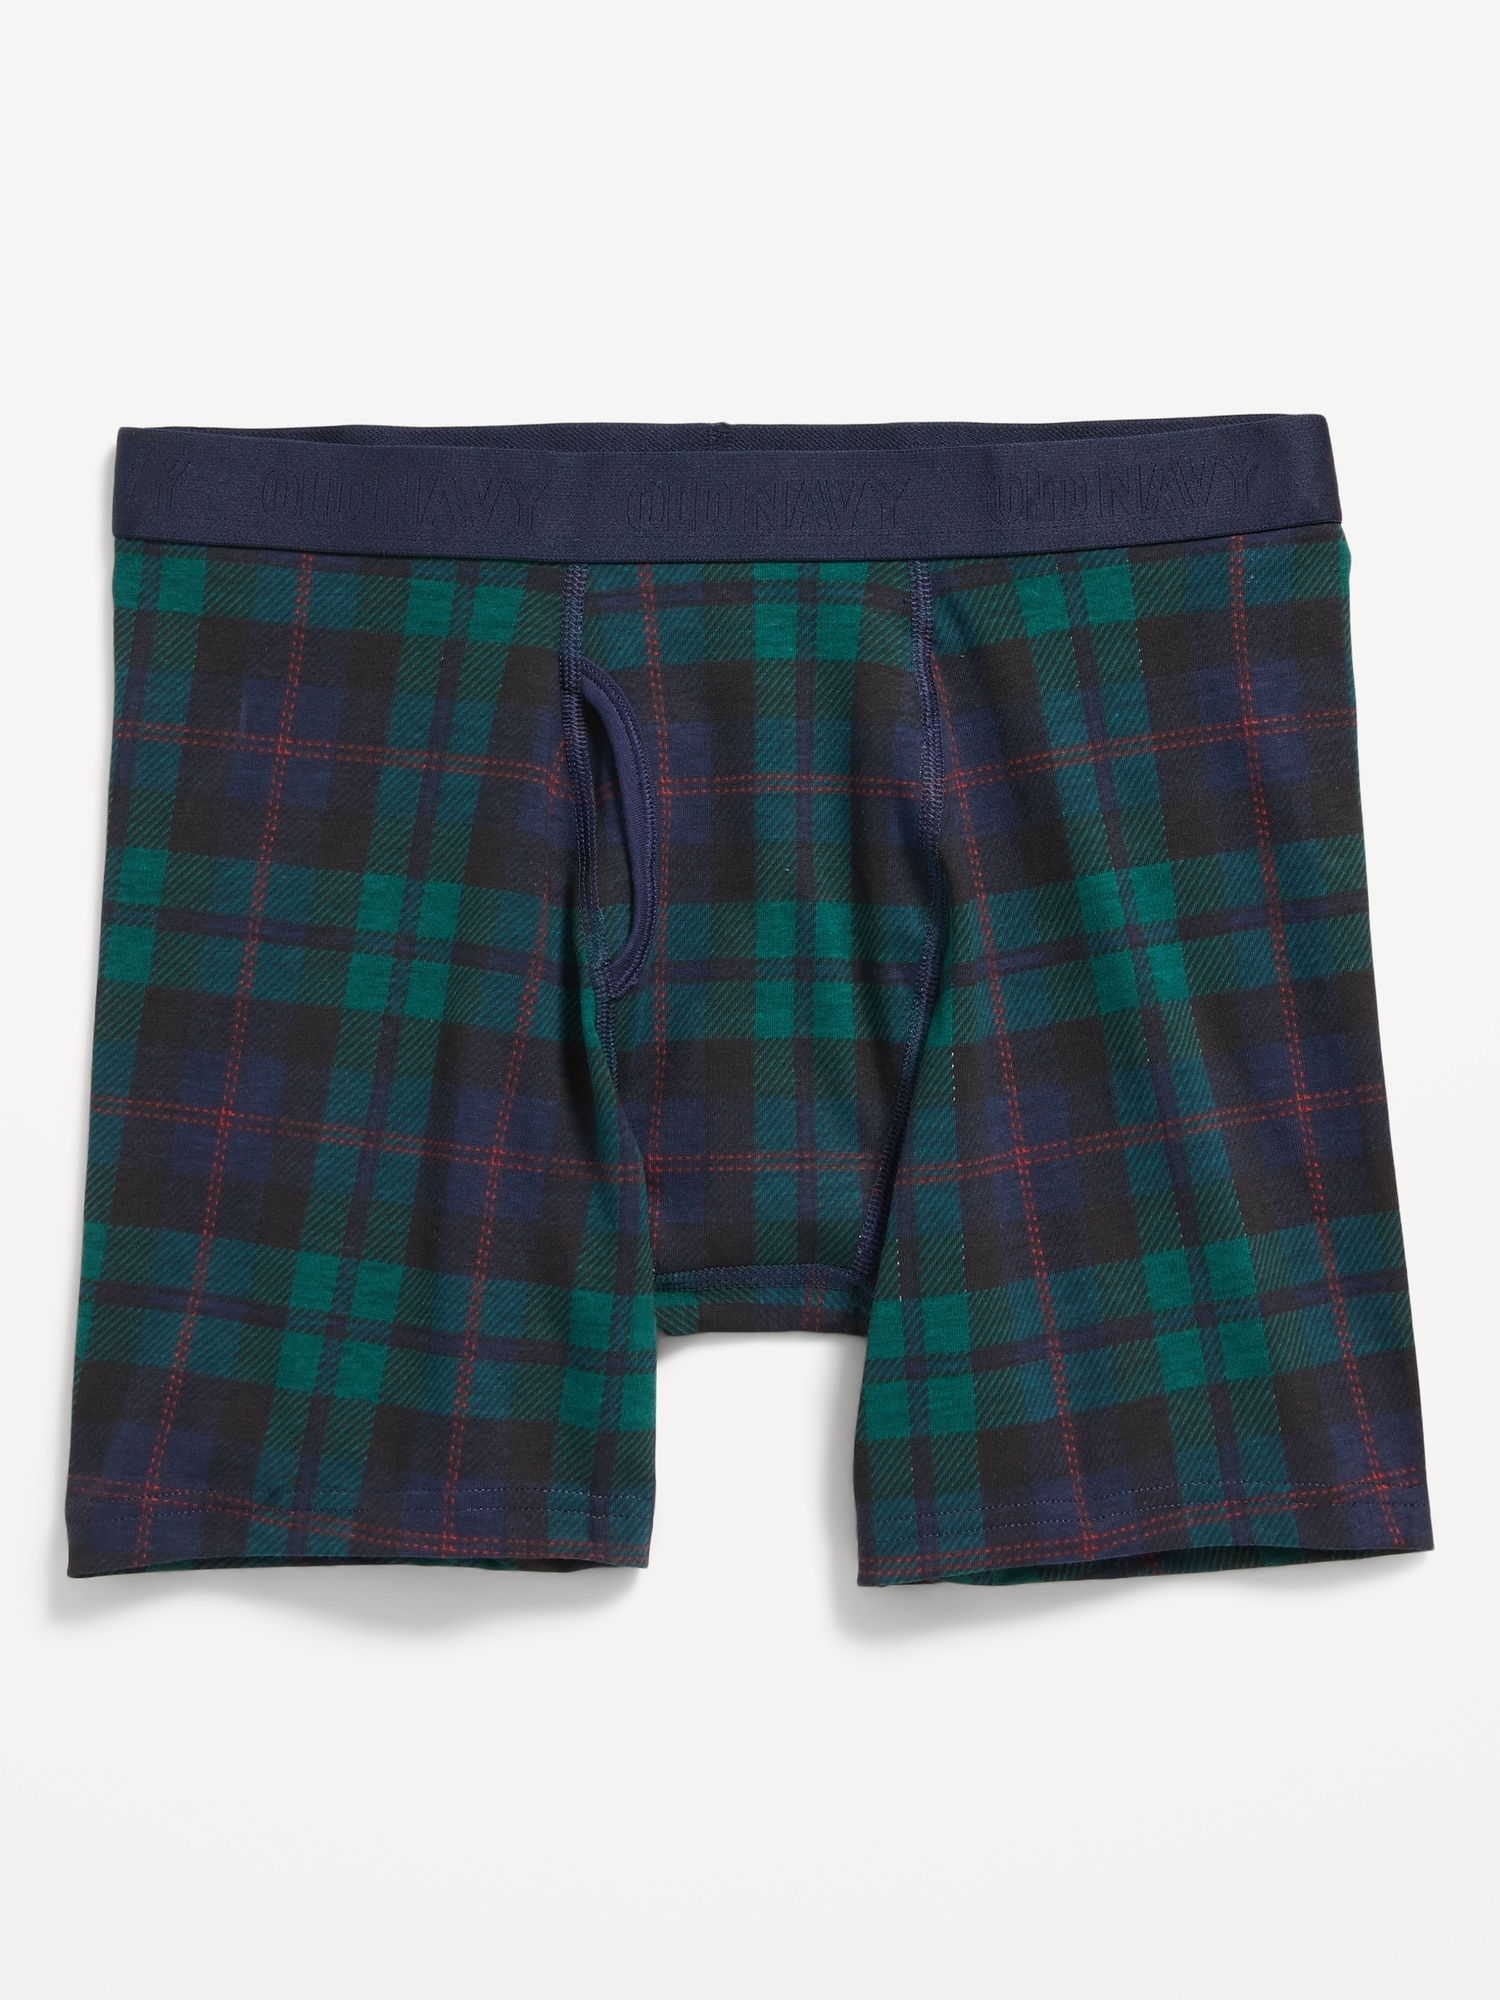 Printed Built-In Flex Boxer-Brief Underwear for Men -- 6.25-inch